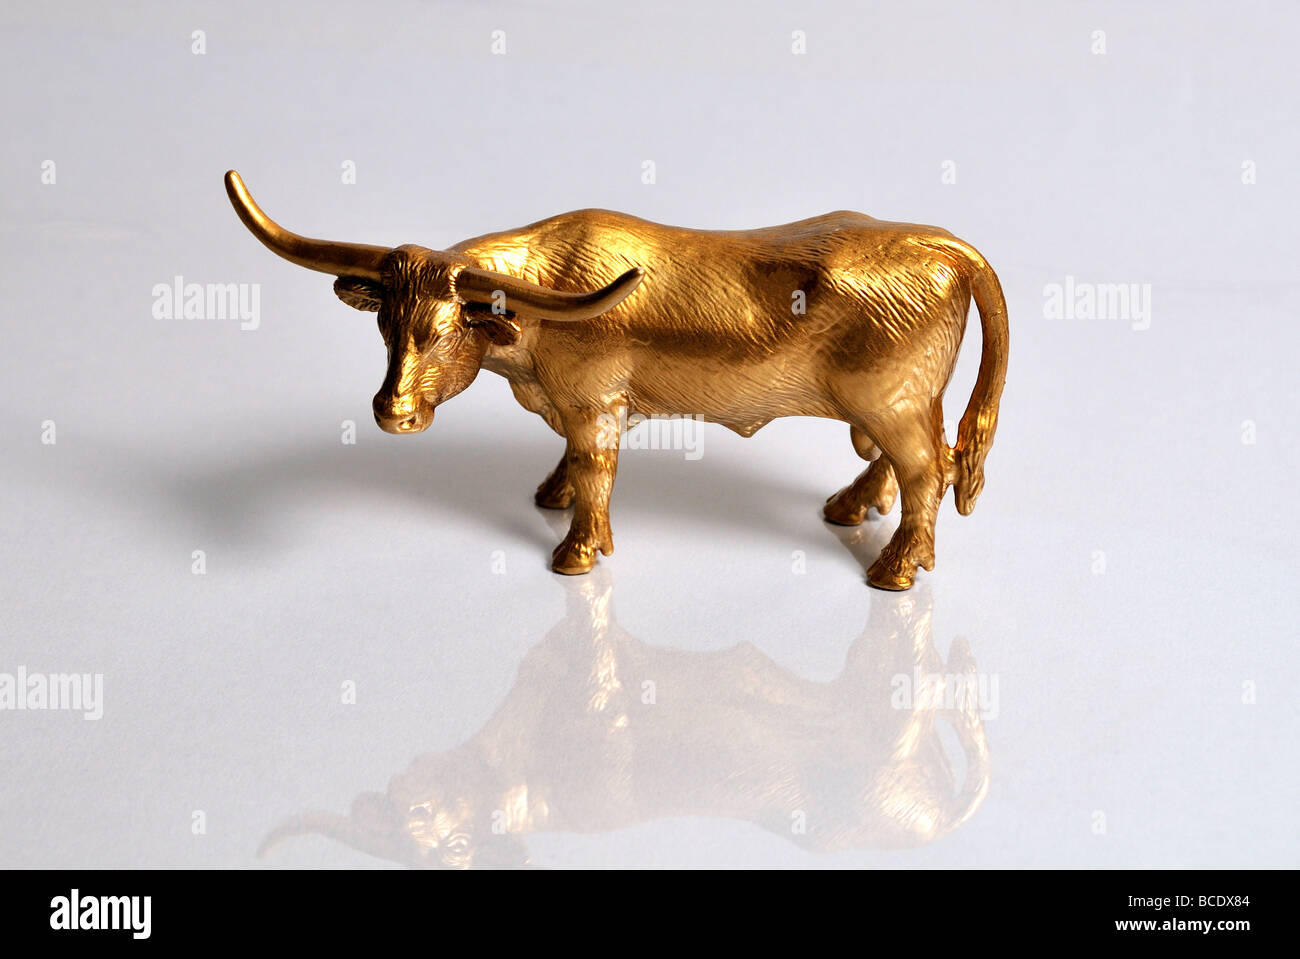 Stock amrket. Ours d'or sur une surface réfléchissante Banque D'Images